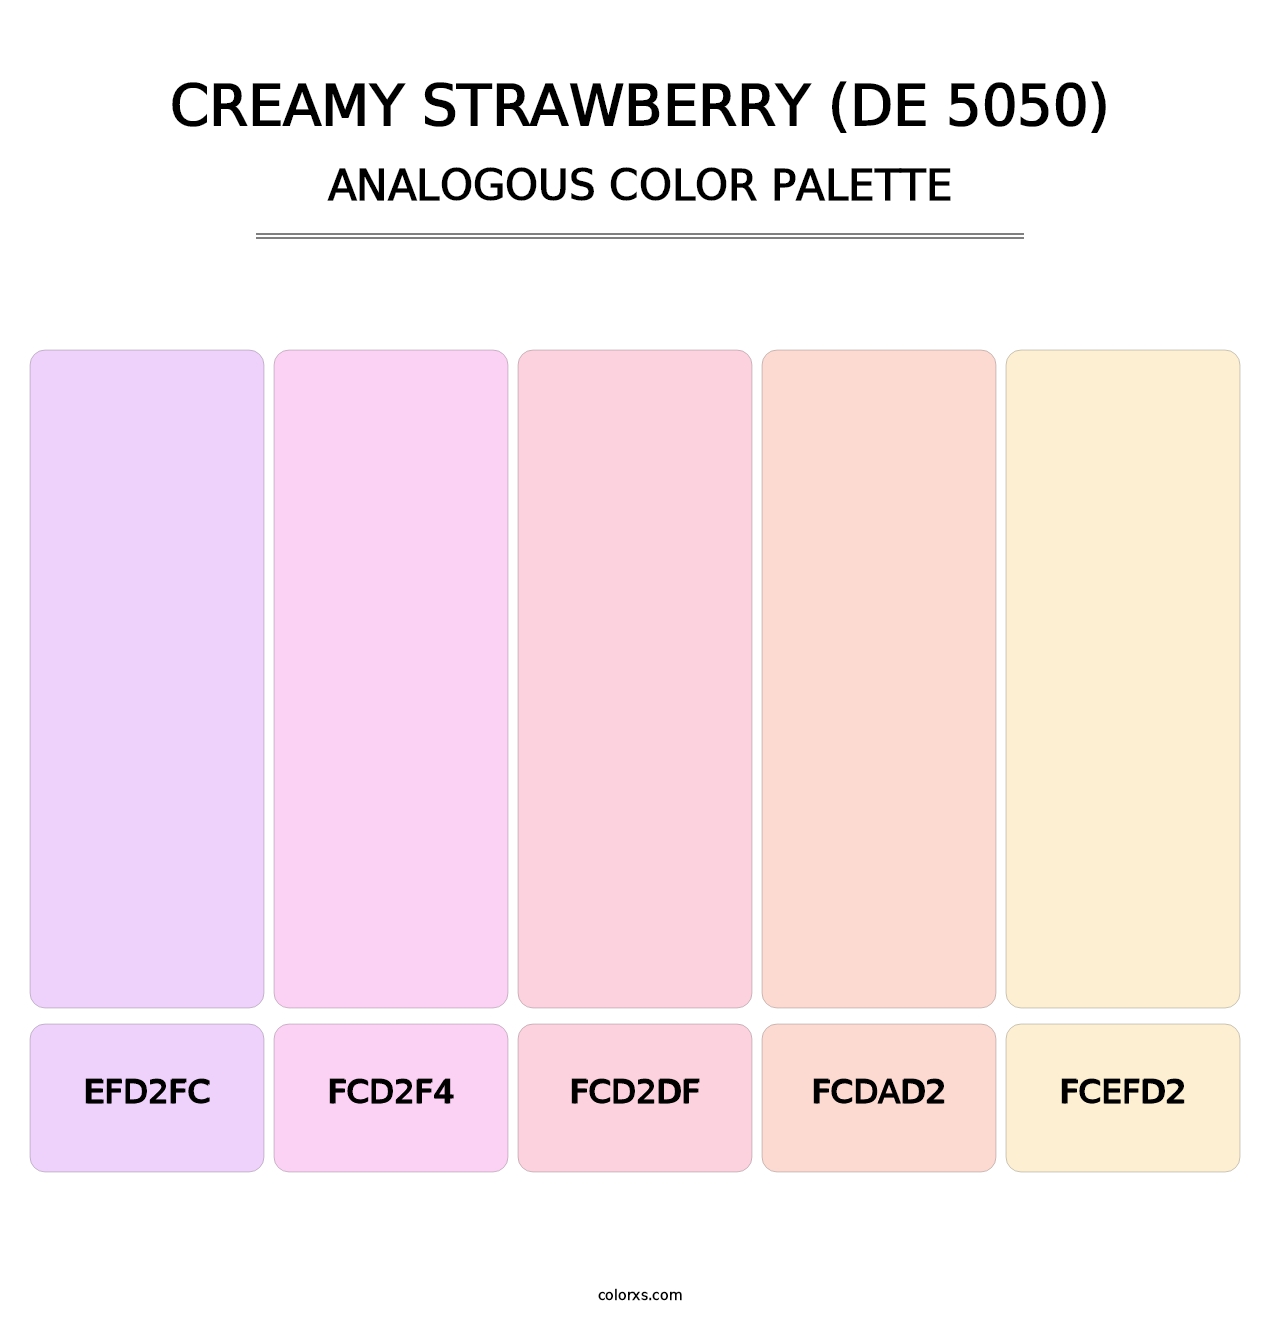 Creamy Strawberry (DE 5050) - Analogous Color Palette